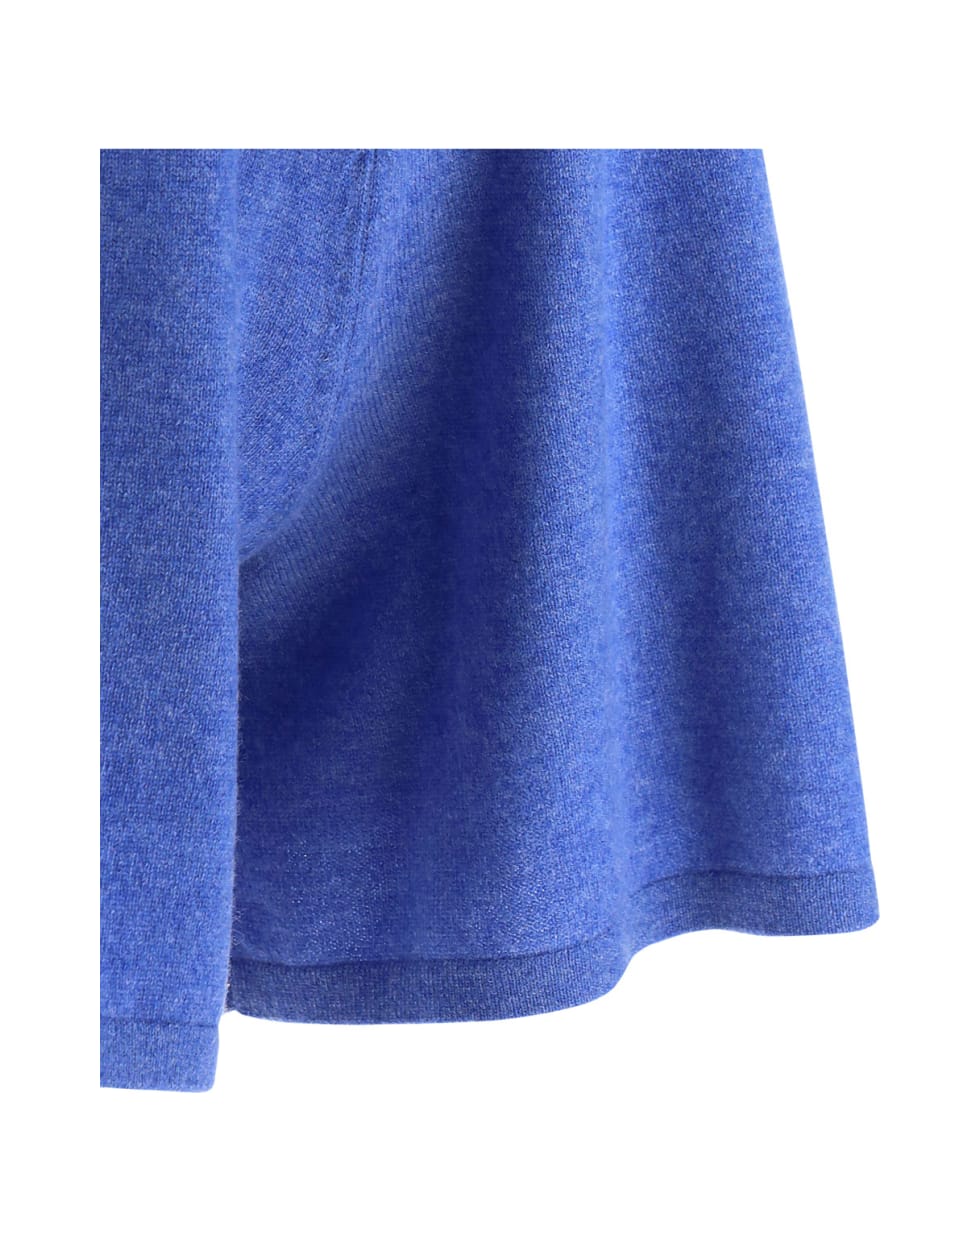 Lisa Yang Gio Shorts - Denim blue